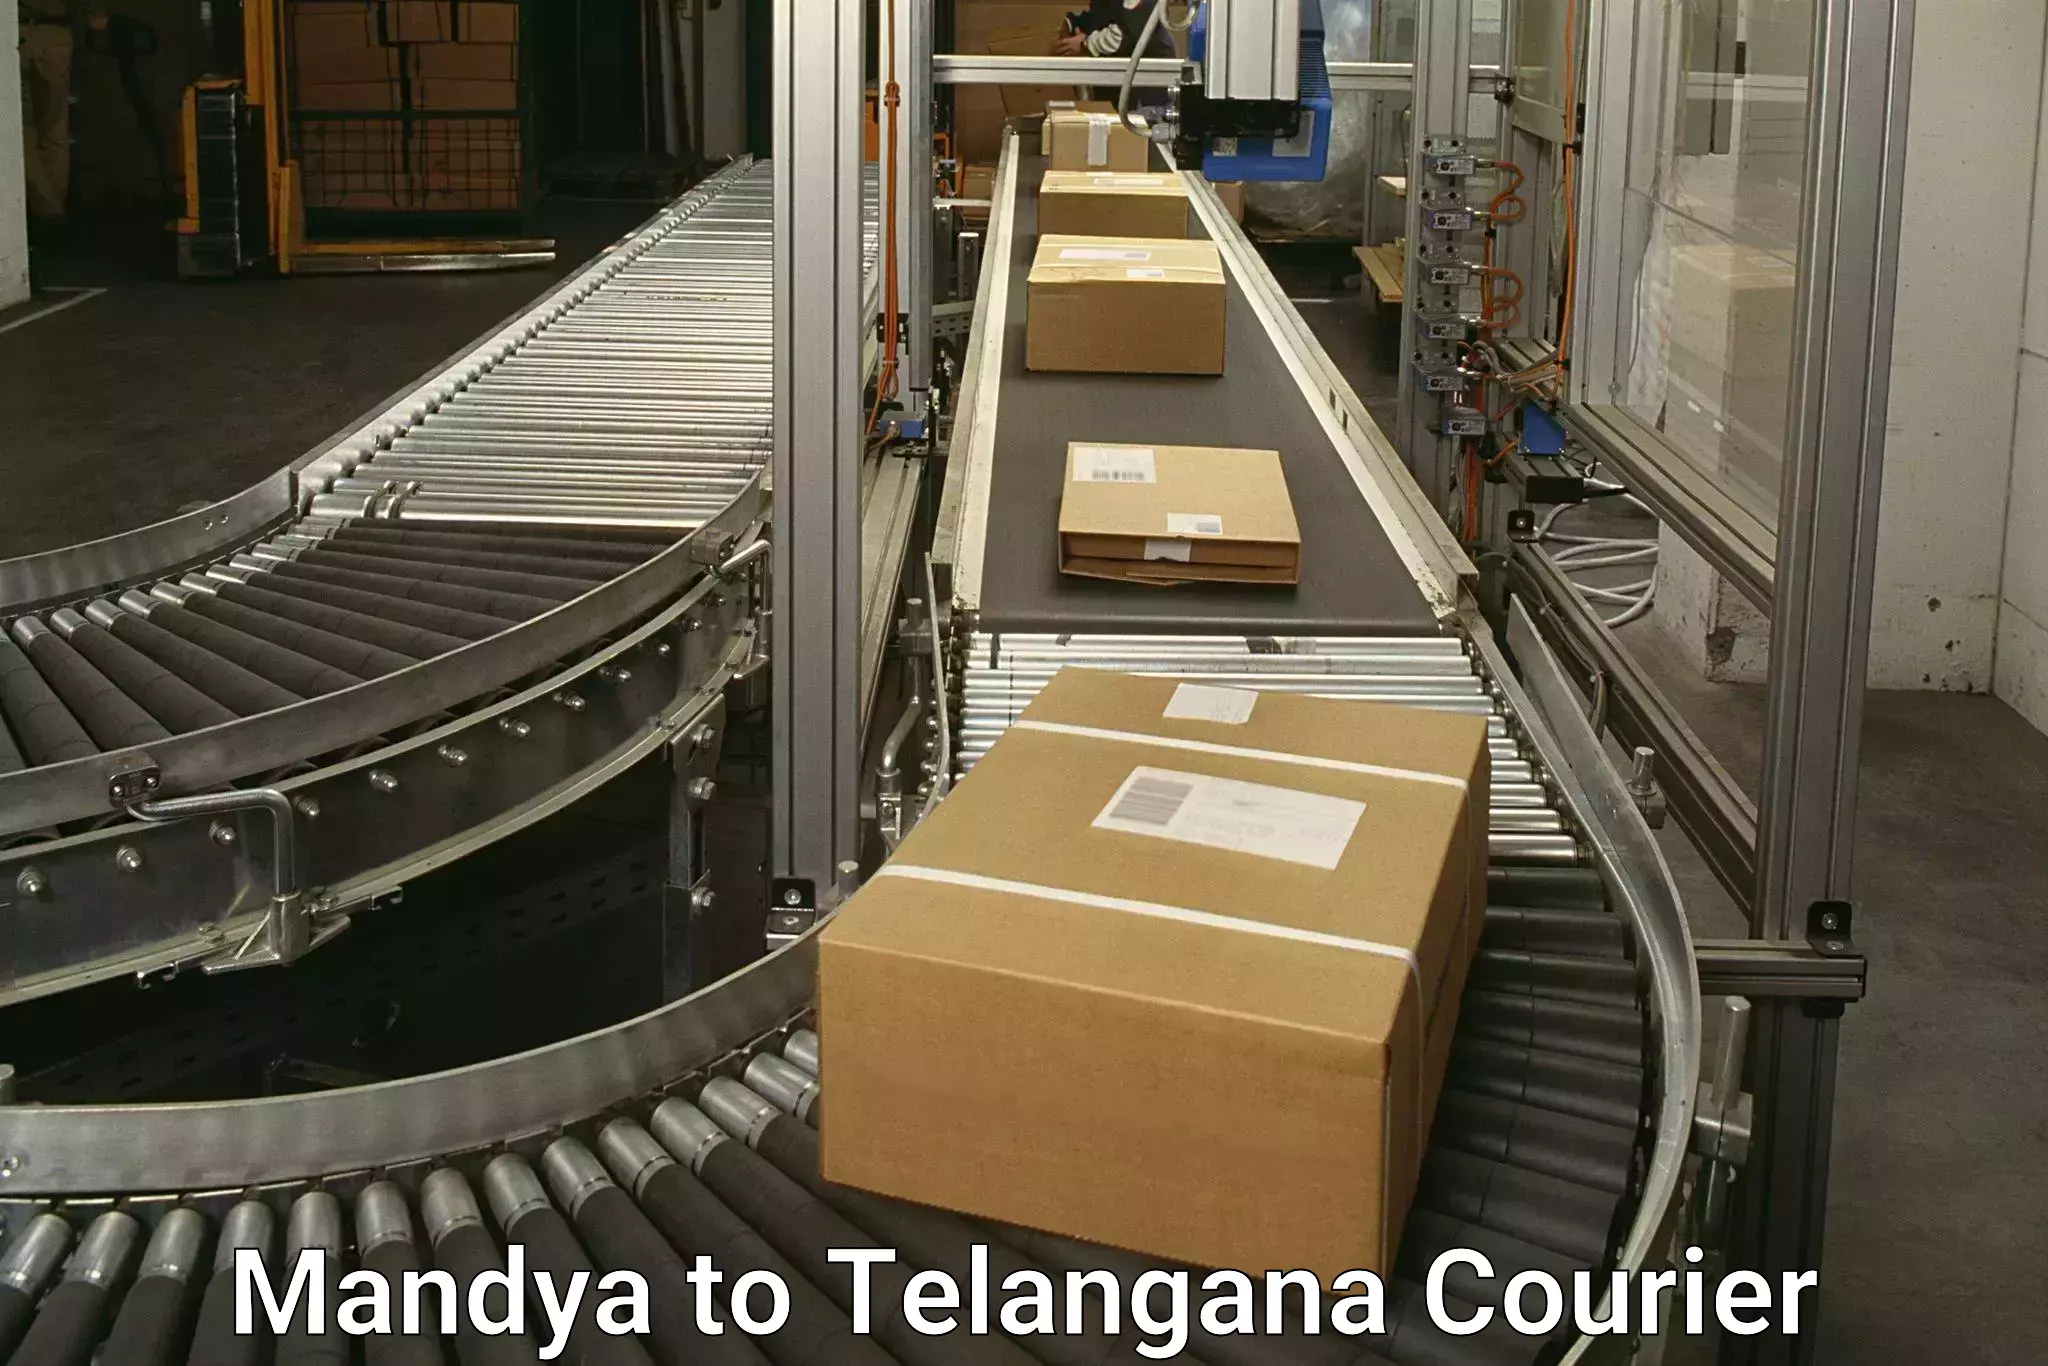 Global shipping networks Mandya to Bellal Tarafa Bodhan